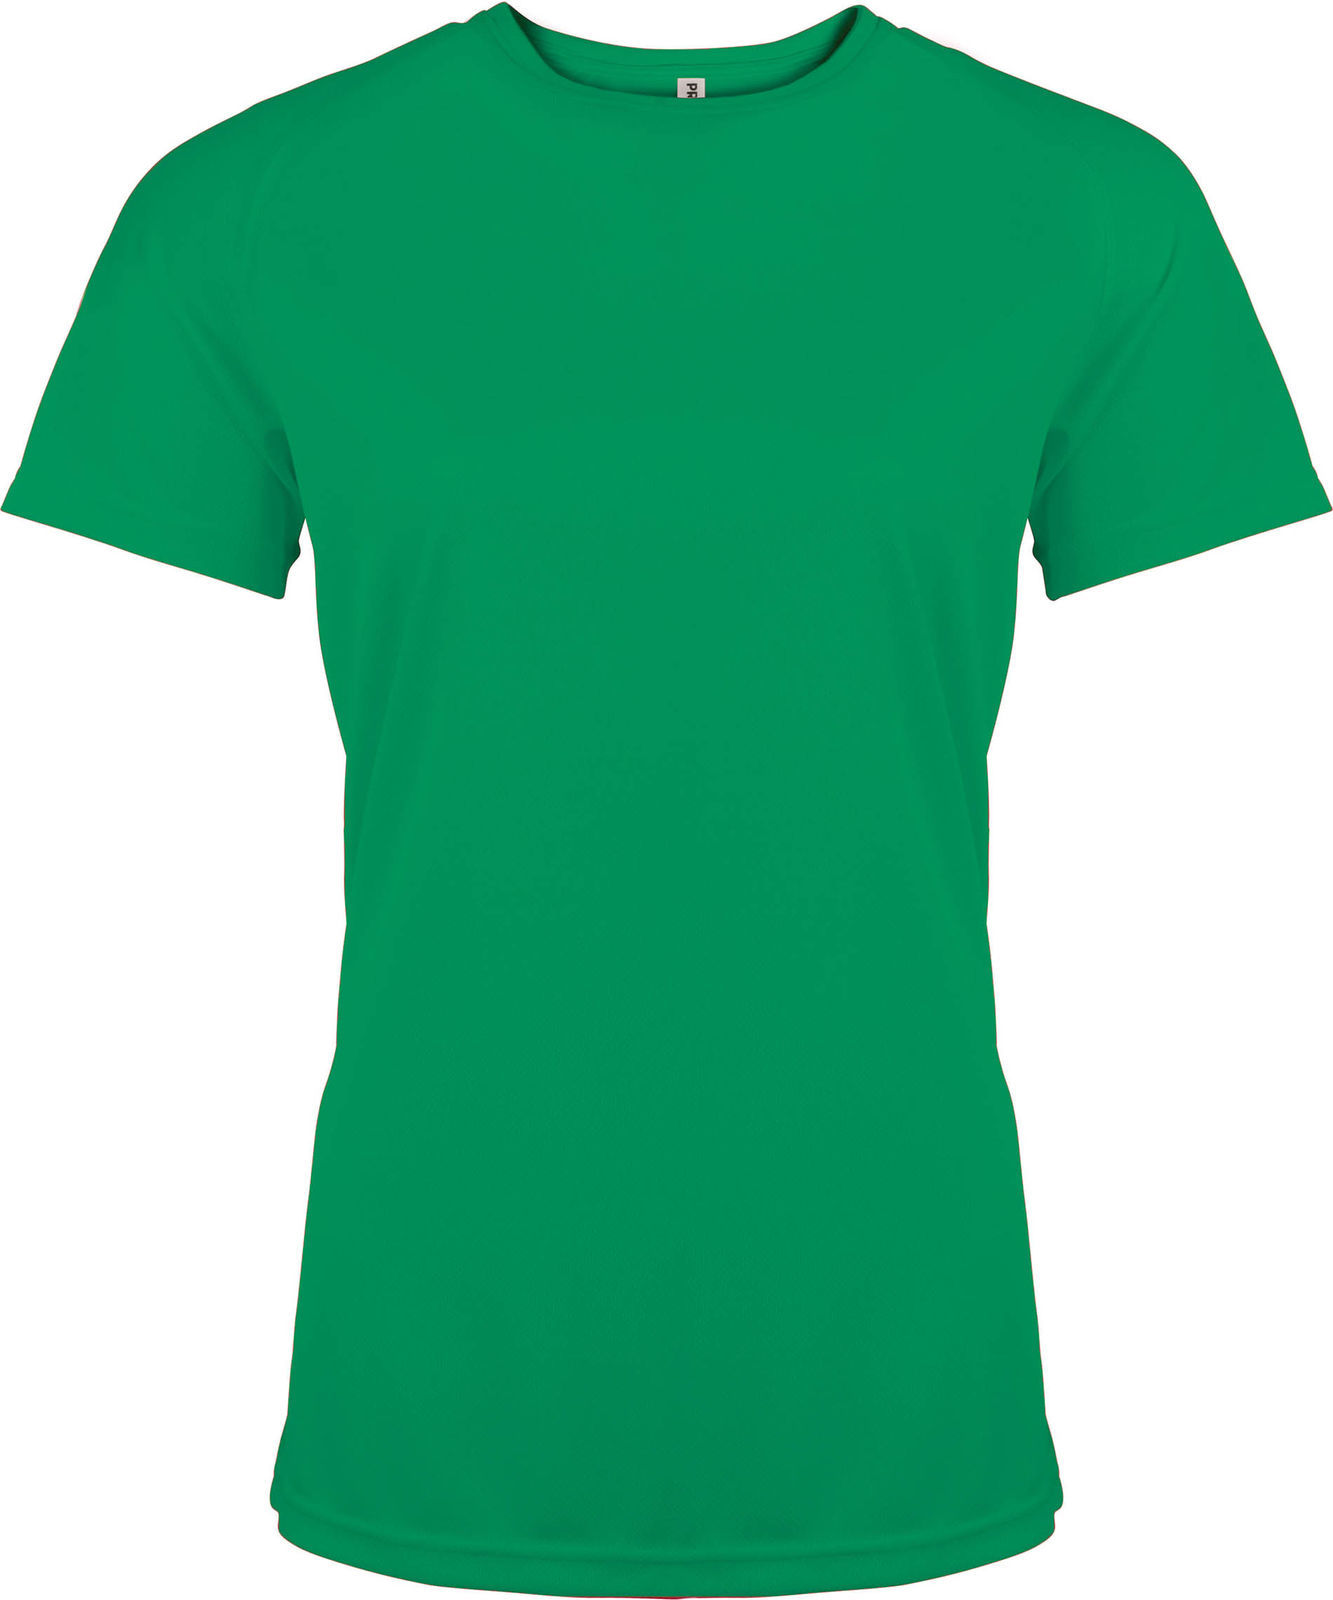 T-shirt Publicitaire sport femme écologique Neutral - Cadoétik